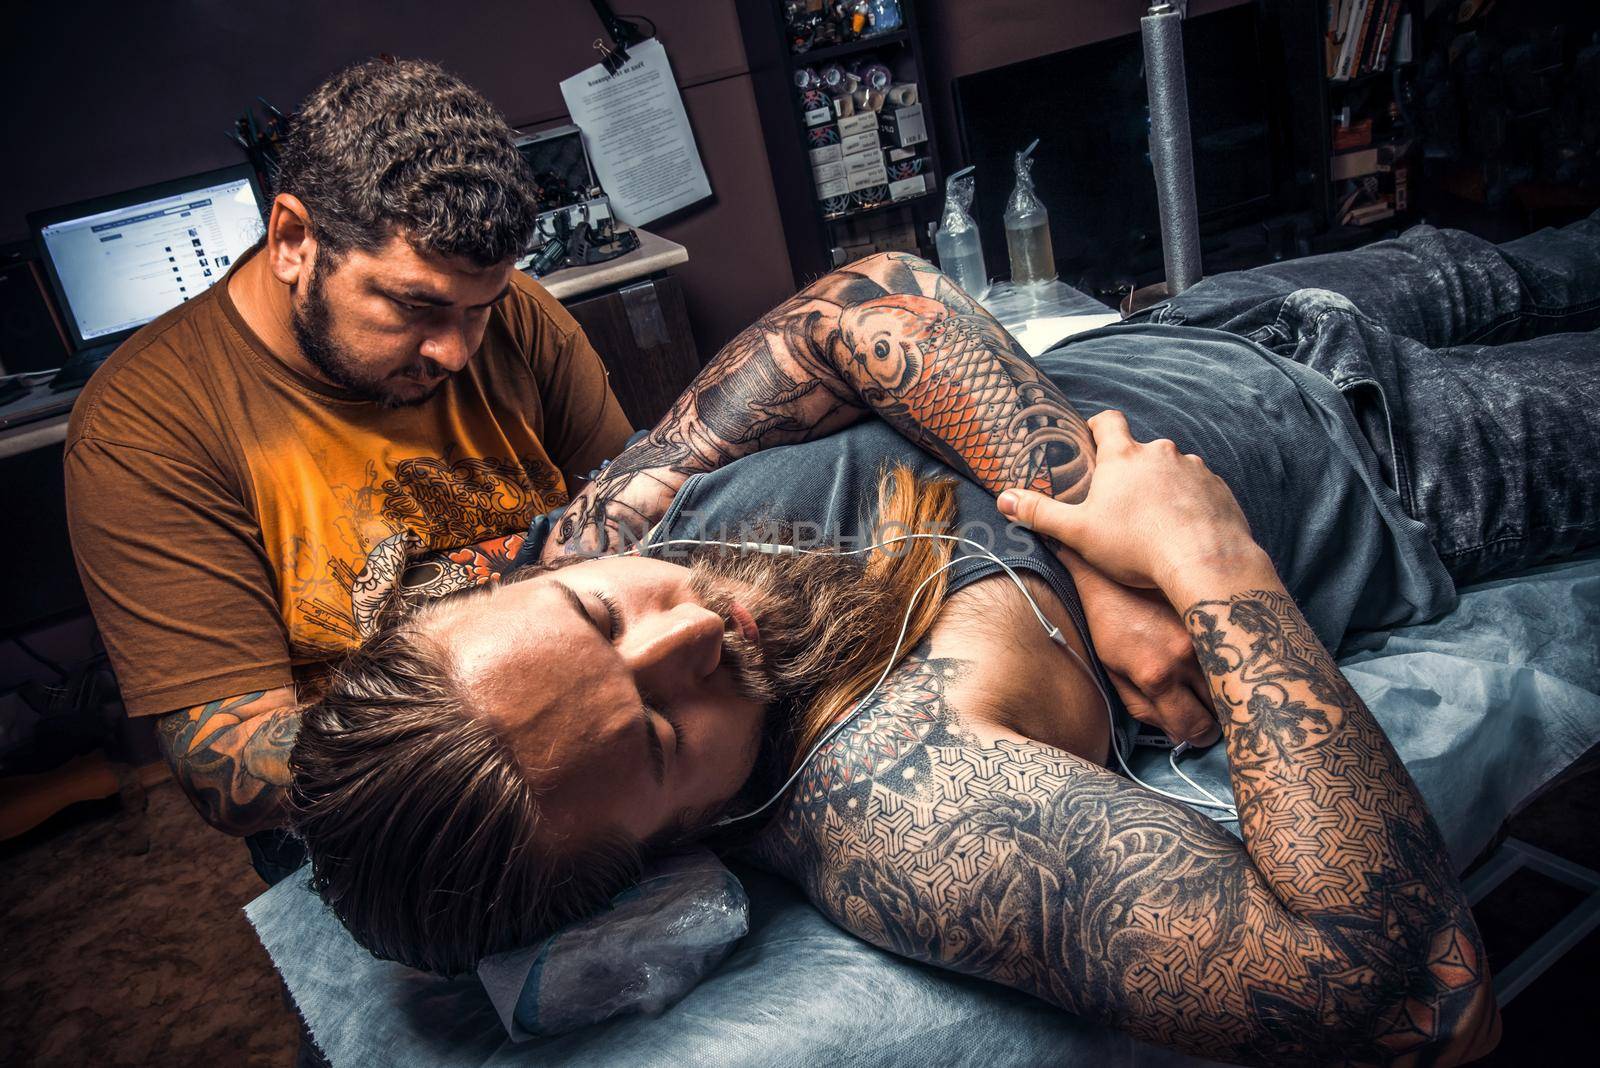 Tattooer makes tattoo pictures in tattoo parlor./Professional tattooist posing in tattoo studio.